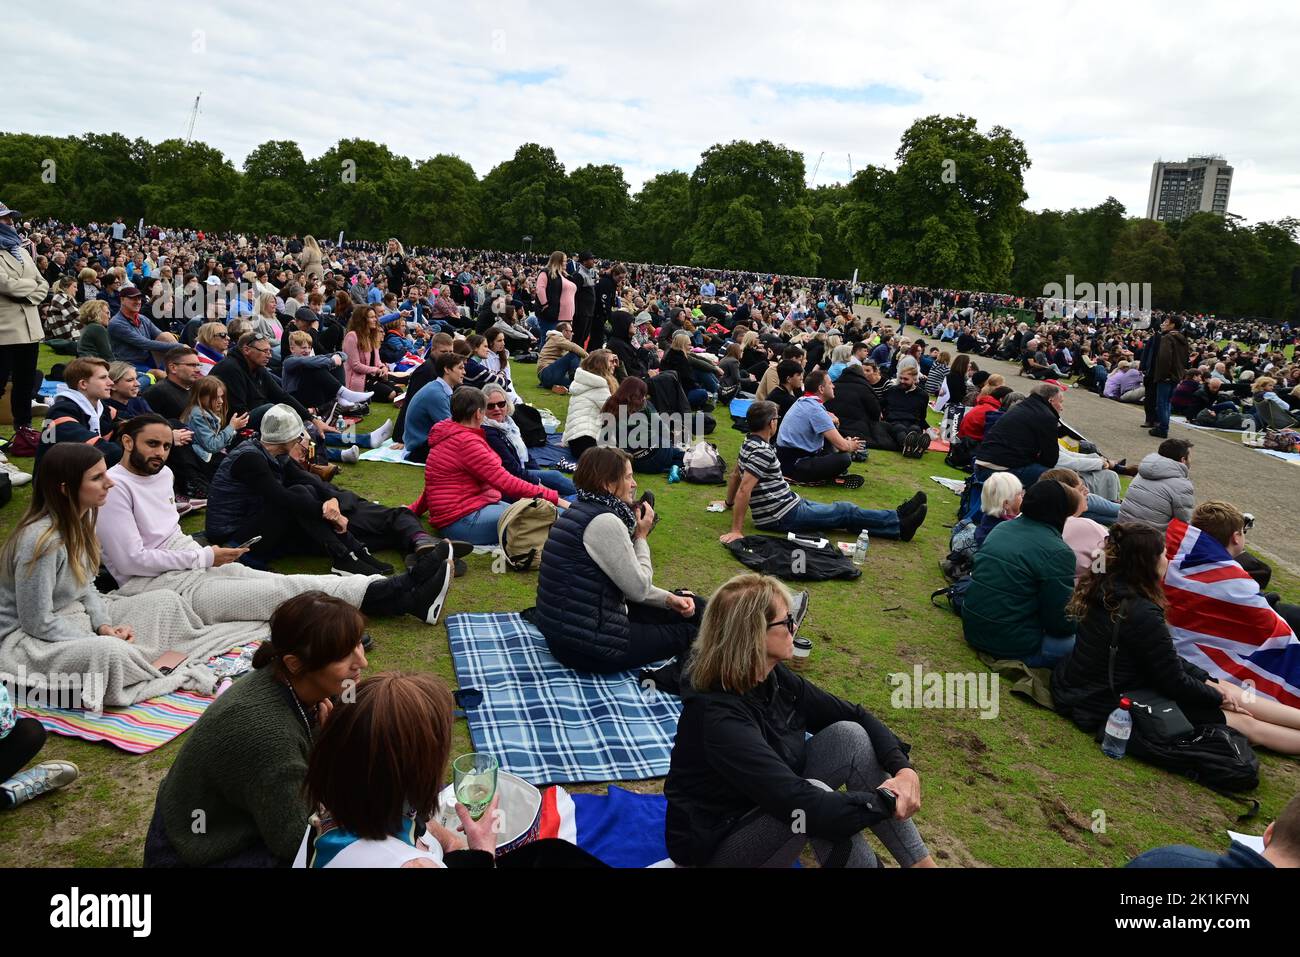 Funeral de Su Majestad la Reina Isabel II, Londres, Reino Unido, lunes 19th de septiembre de 2022. Multitudes de personas se reunieron en Hyde Park para ver la ceremonia en pantallas grandes. Foto de stock